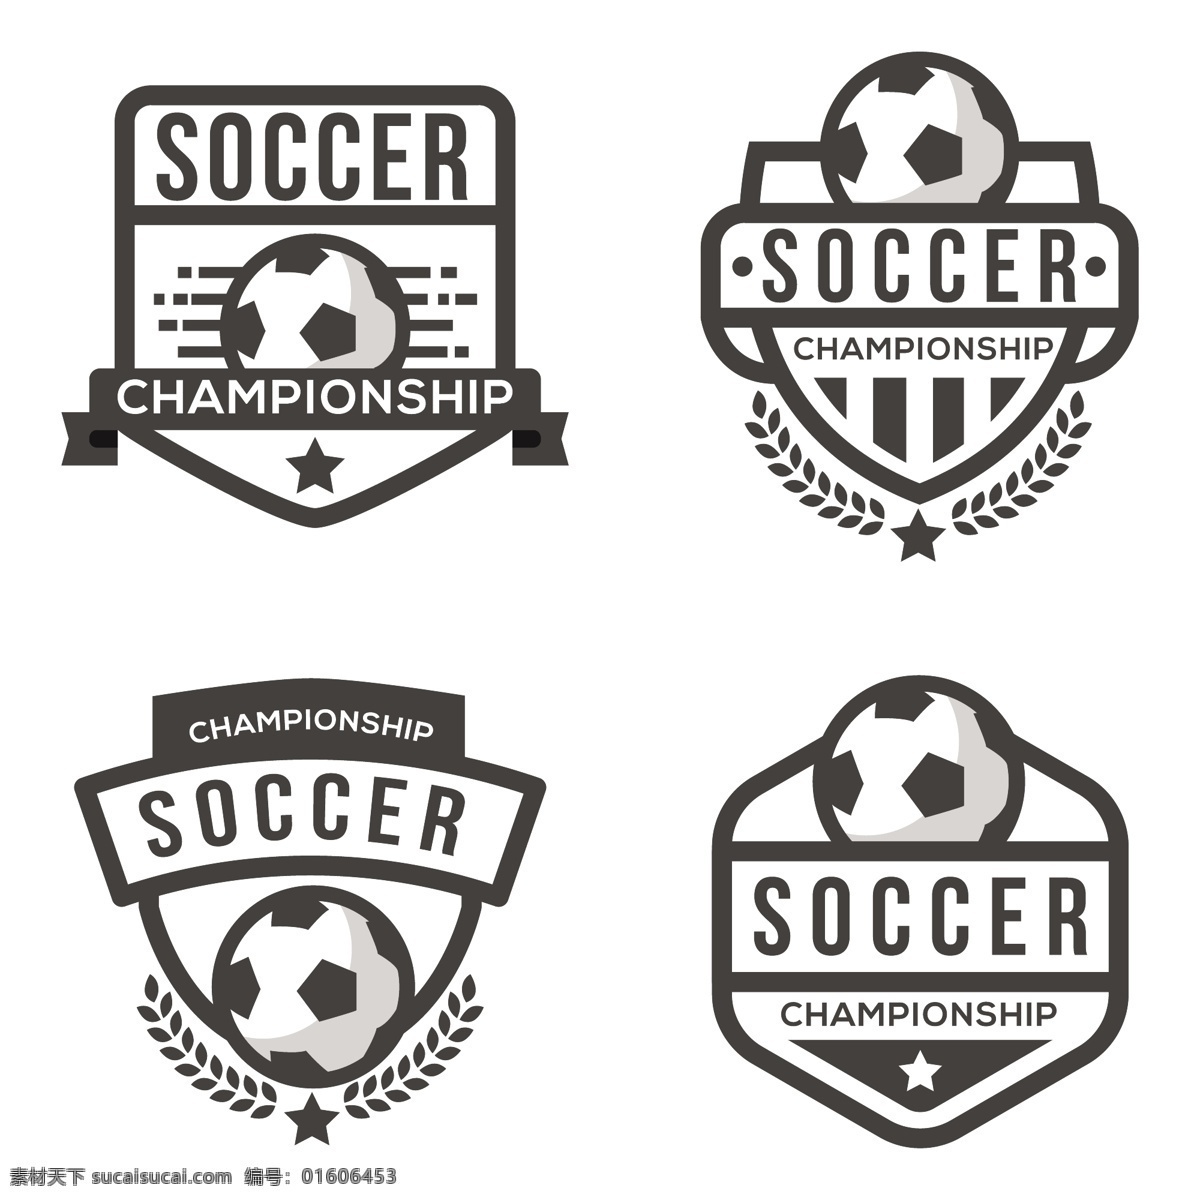 足球标识模板 标识 业务摘要 足球 模板 营销 企业 公司 品牌 抽象图案 形状 现代企业形象 身份 商业标识 公司标志 足球的标志